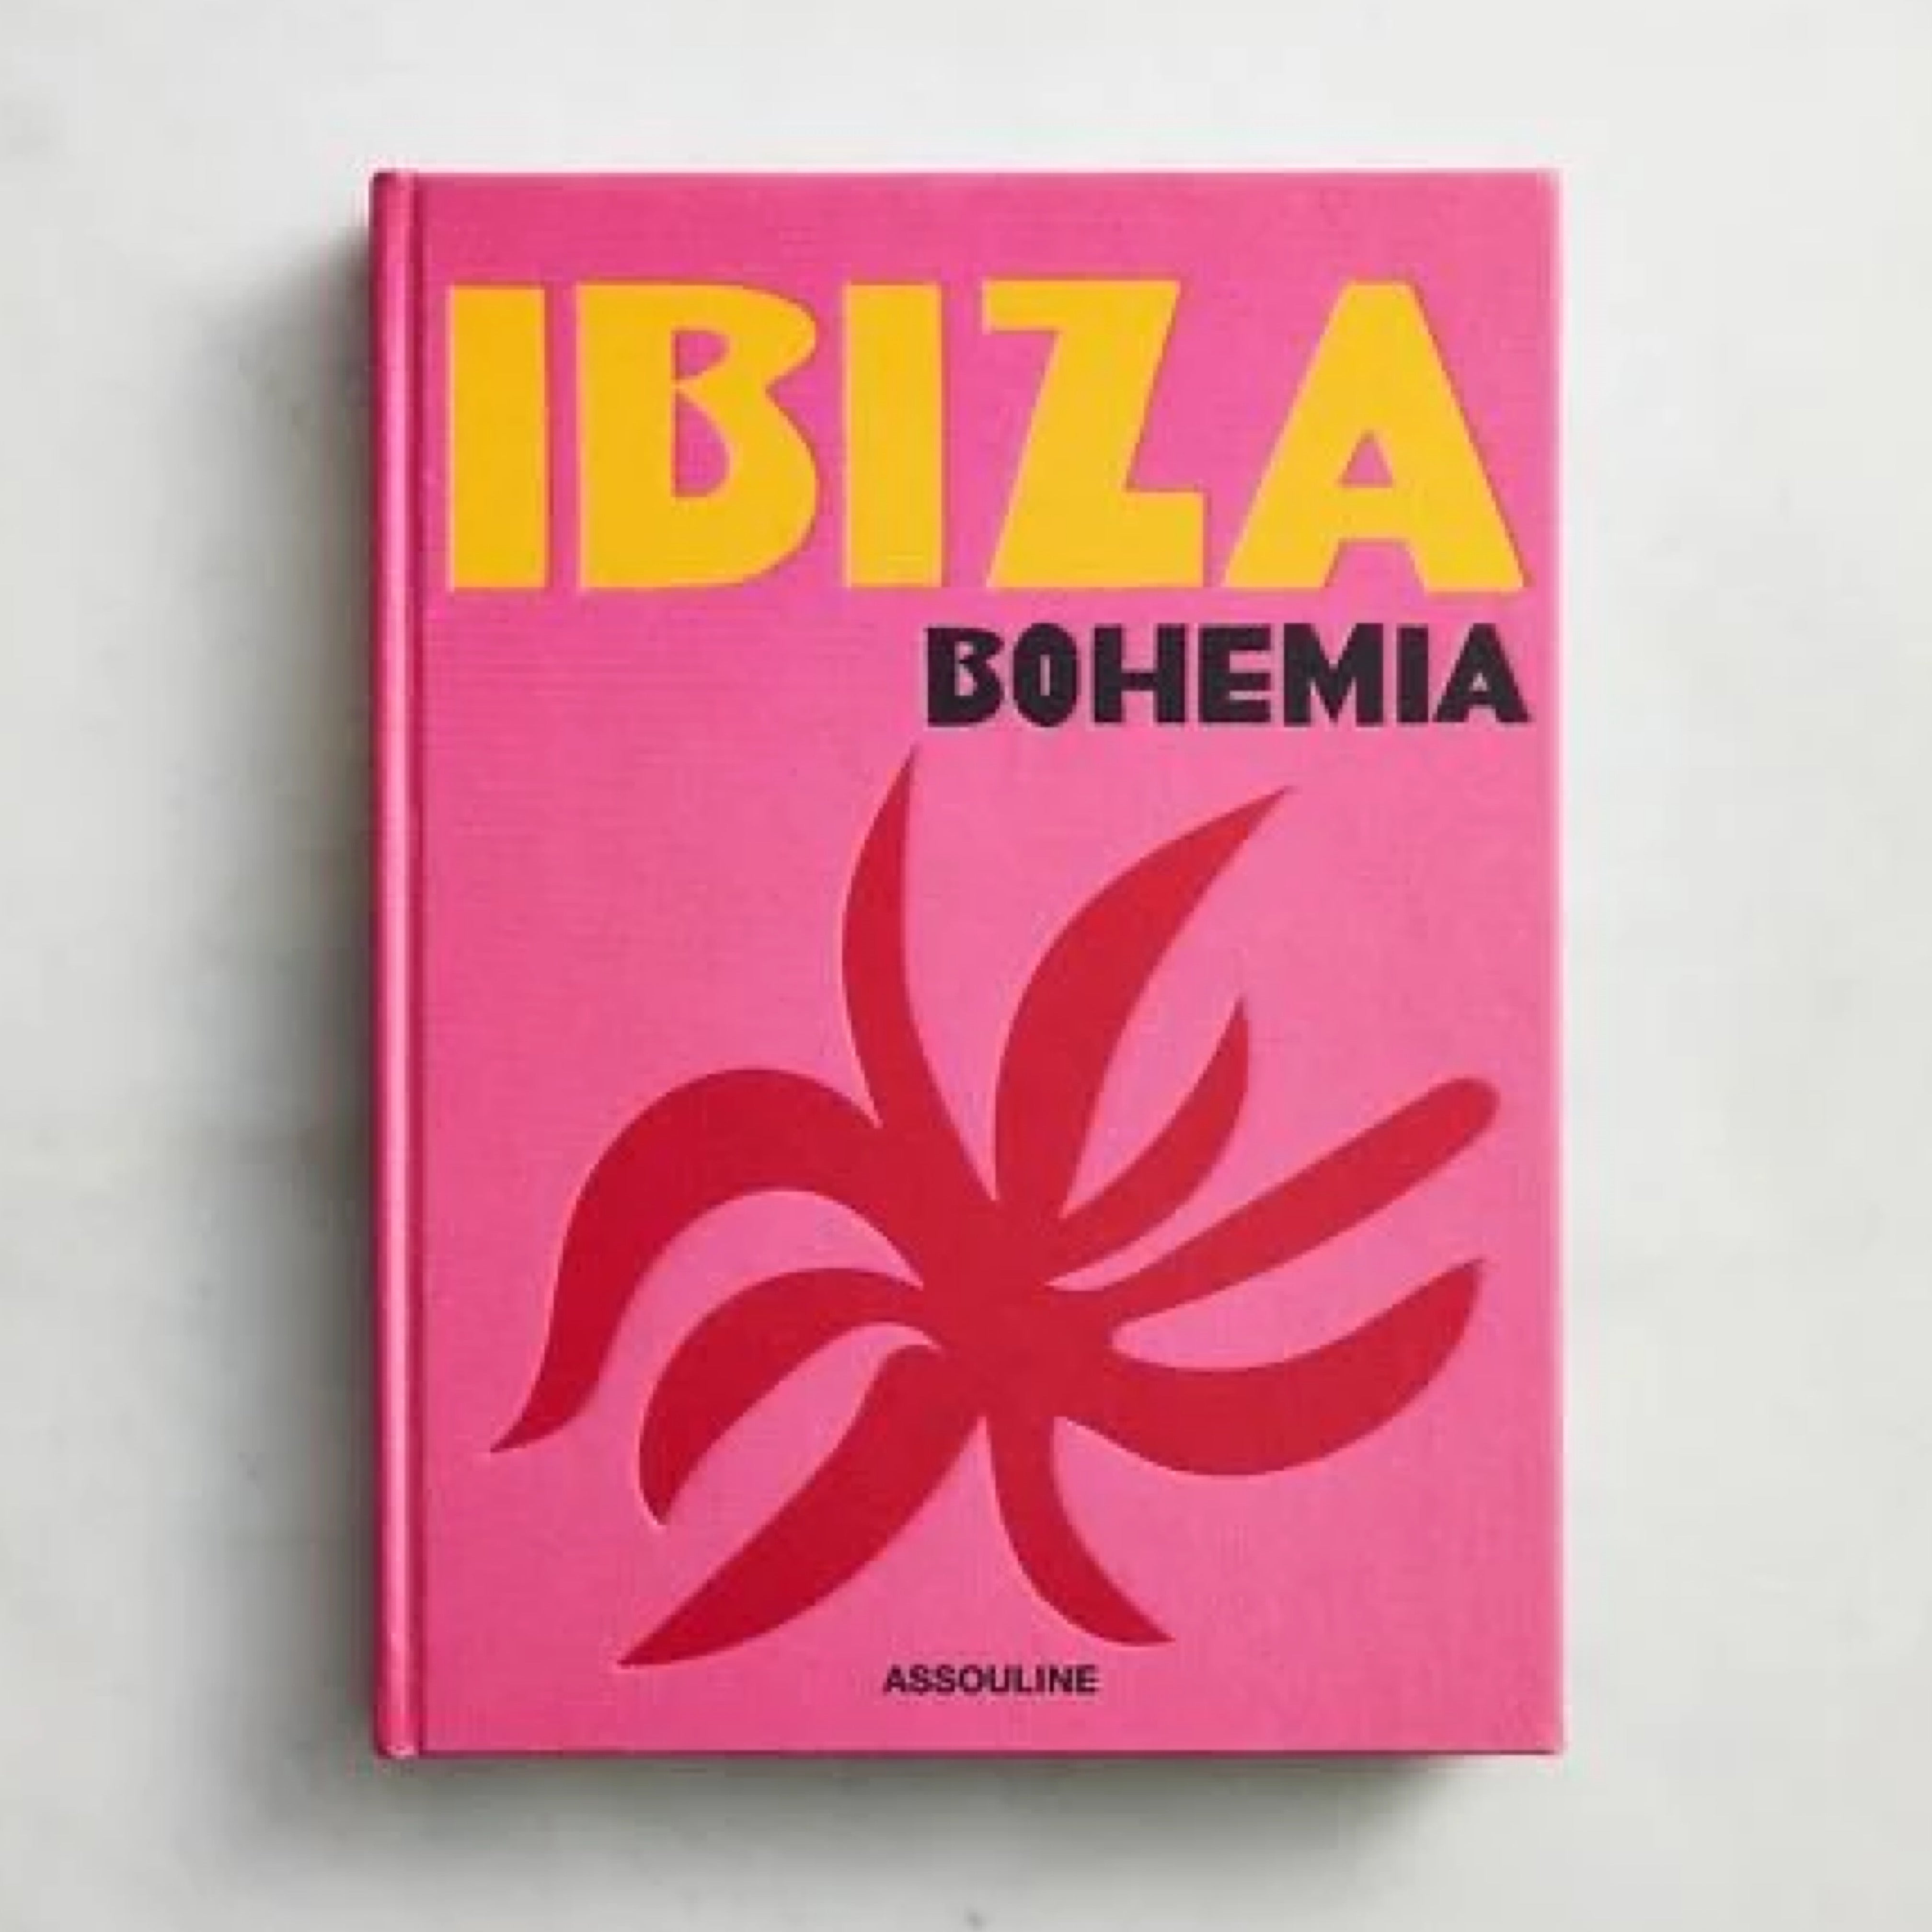 Ibiza Bohemia, libro